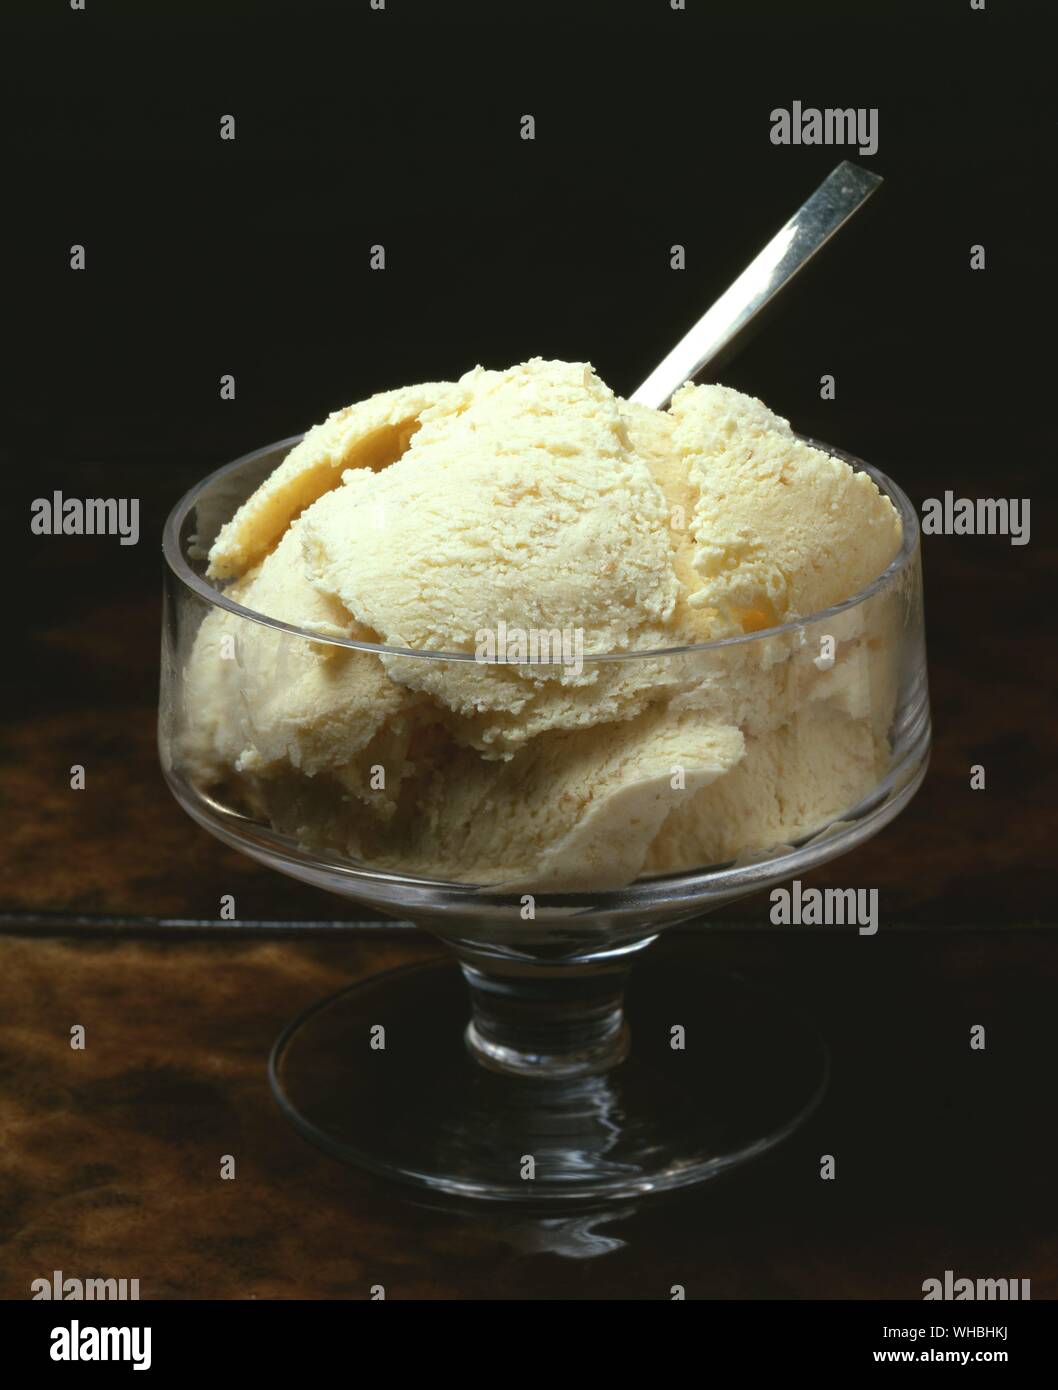 La crème glacée pain brun : desserts congelés fabriqués à partir de produits laitiers, comme le lait et la crème Banque D'Images